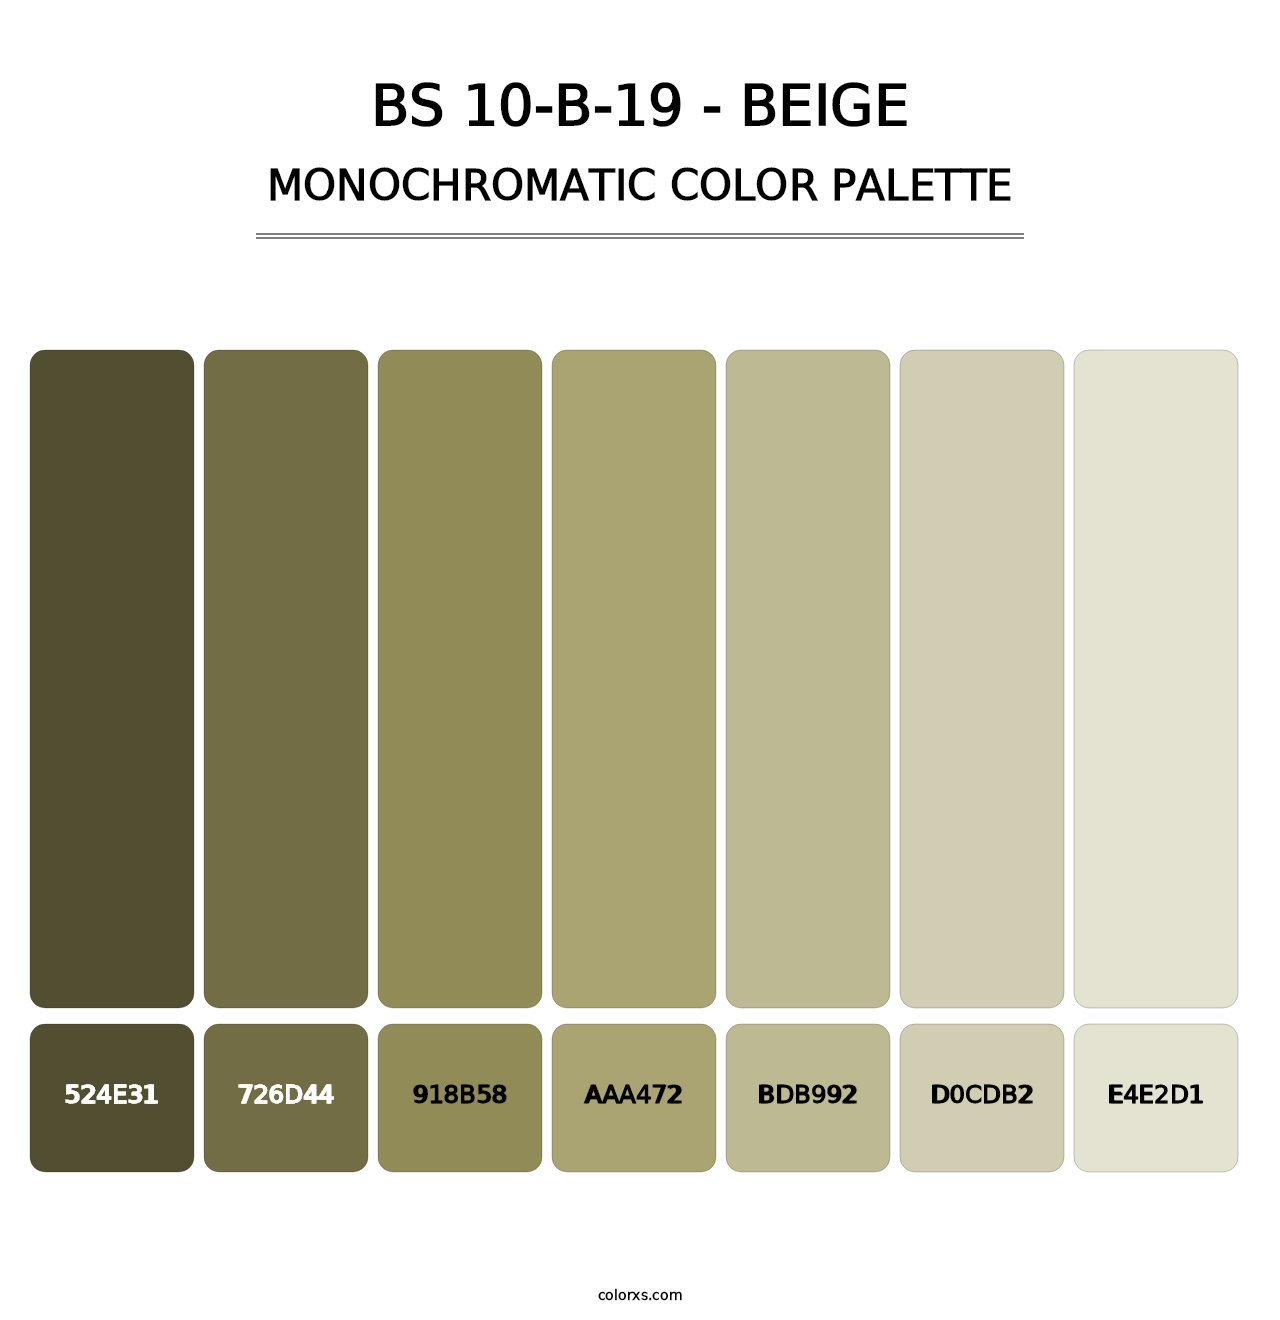 BS 10-B-19 - Beige - Monochromatic Color Palette